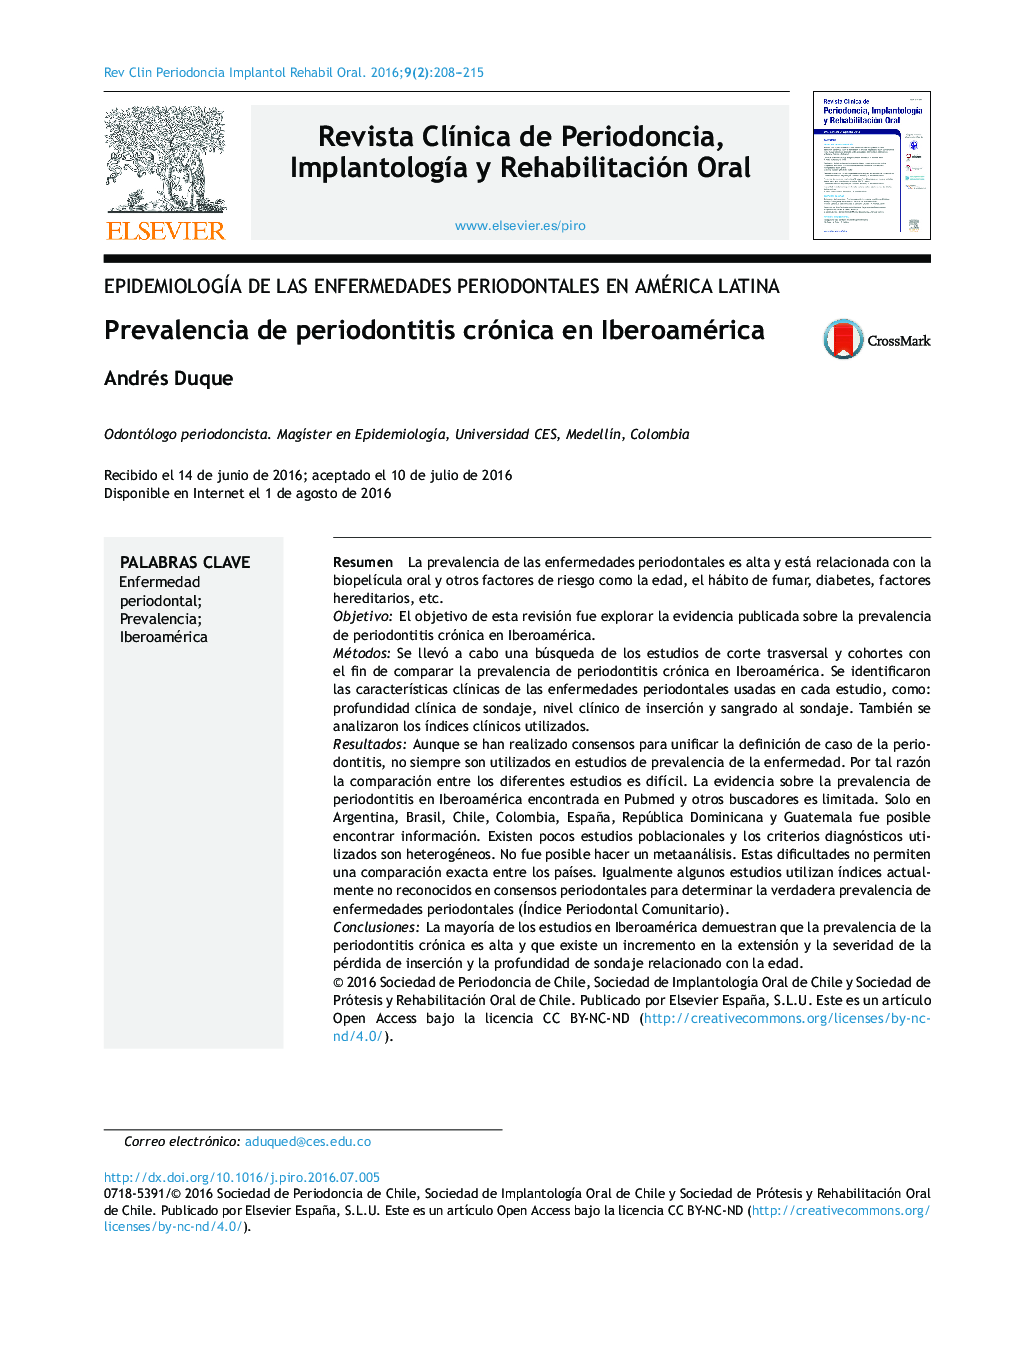 Prevalencia de periodontitis crónica en Iberoamérica